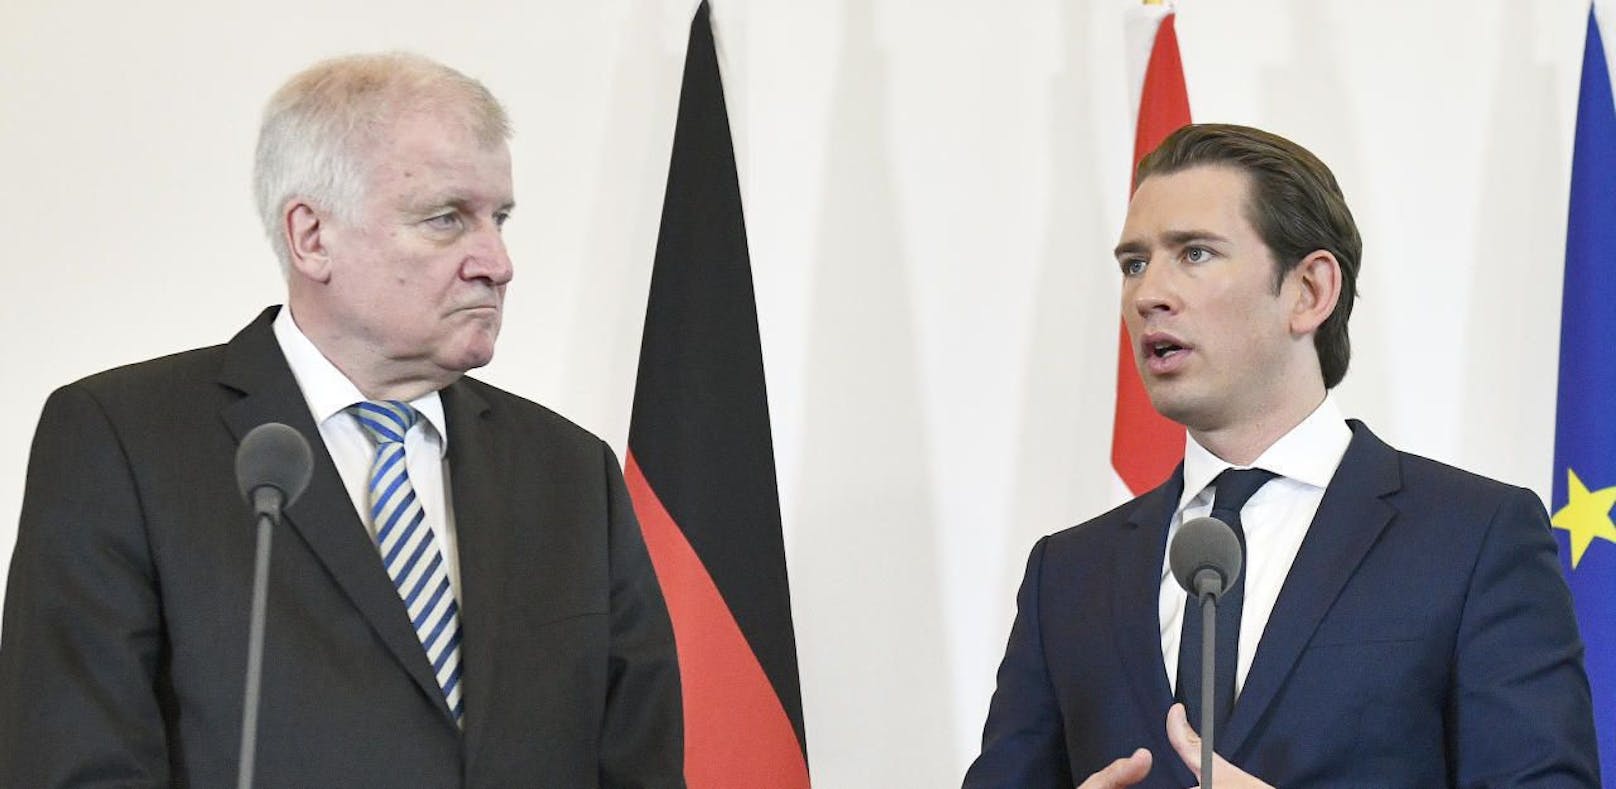 Deutschlands Innenminister Horst Seehofer (CSU) mit dem österreichischen Bundeskanzler Sebastian Kurz (ÖVP) in Wien.